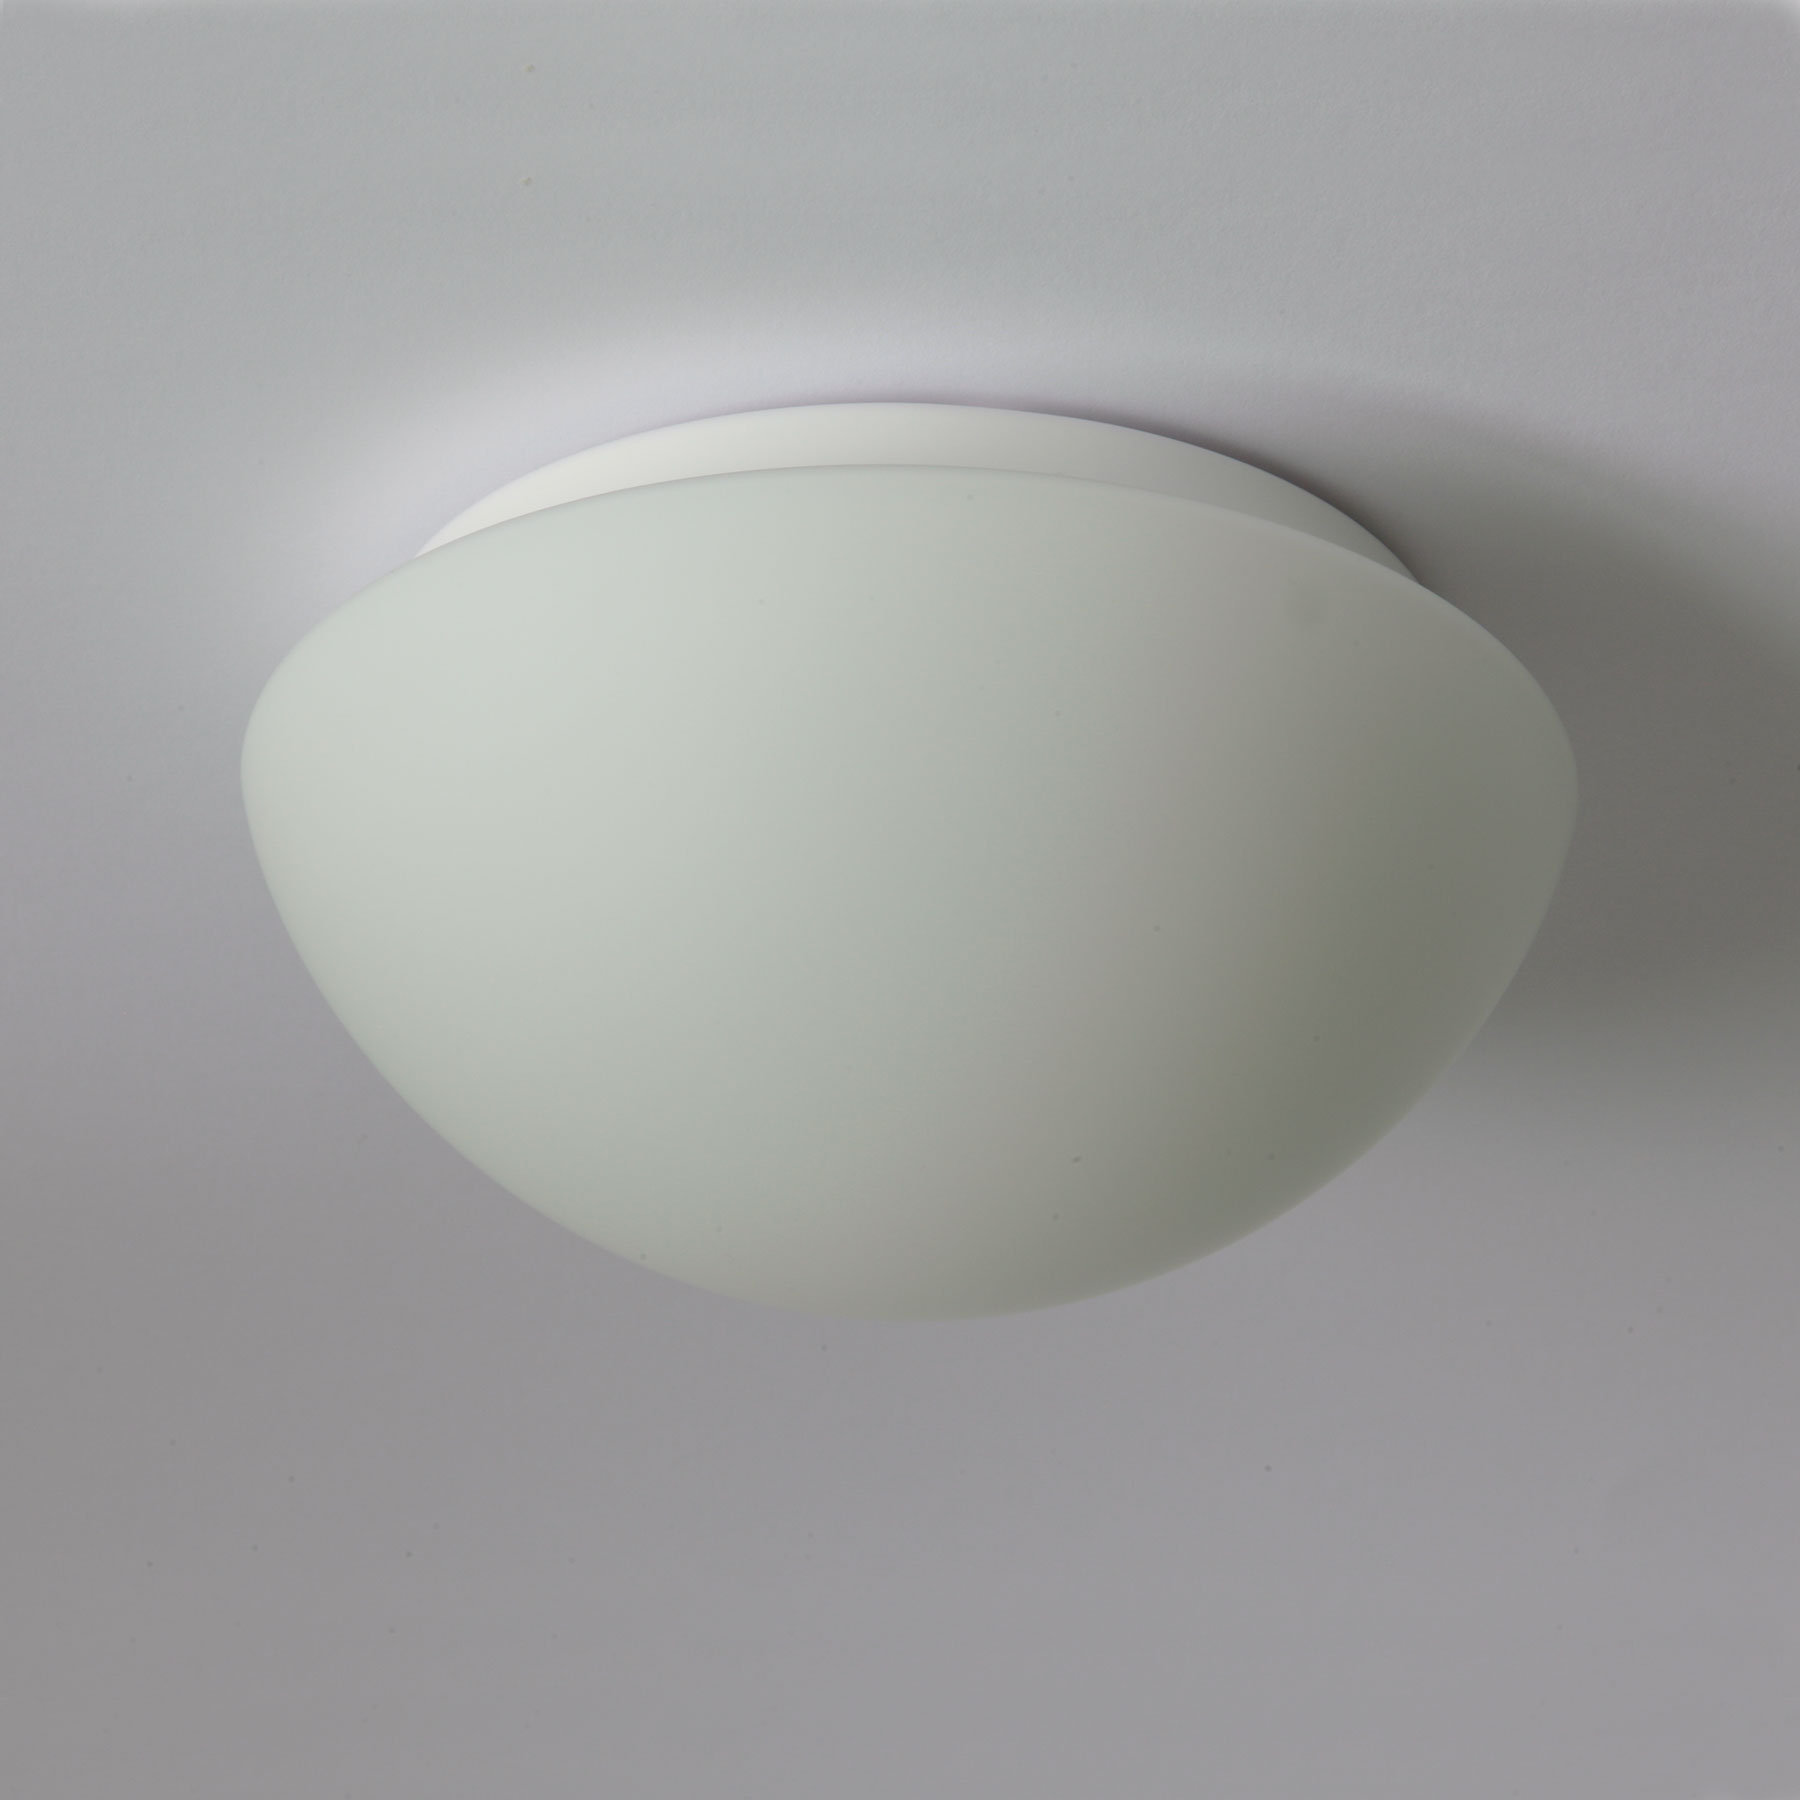 Funktionale Opalglas-Deckenleuchte AURORA LED, Ø 20–60 cm: Kleine gewölbte LED-Deckenleuchte, Ø 20 cm